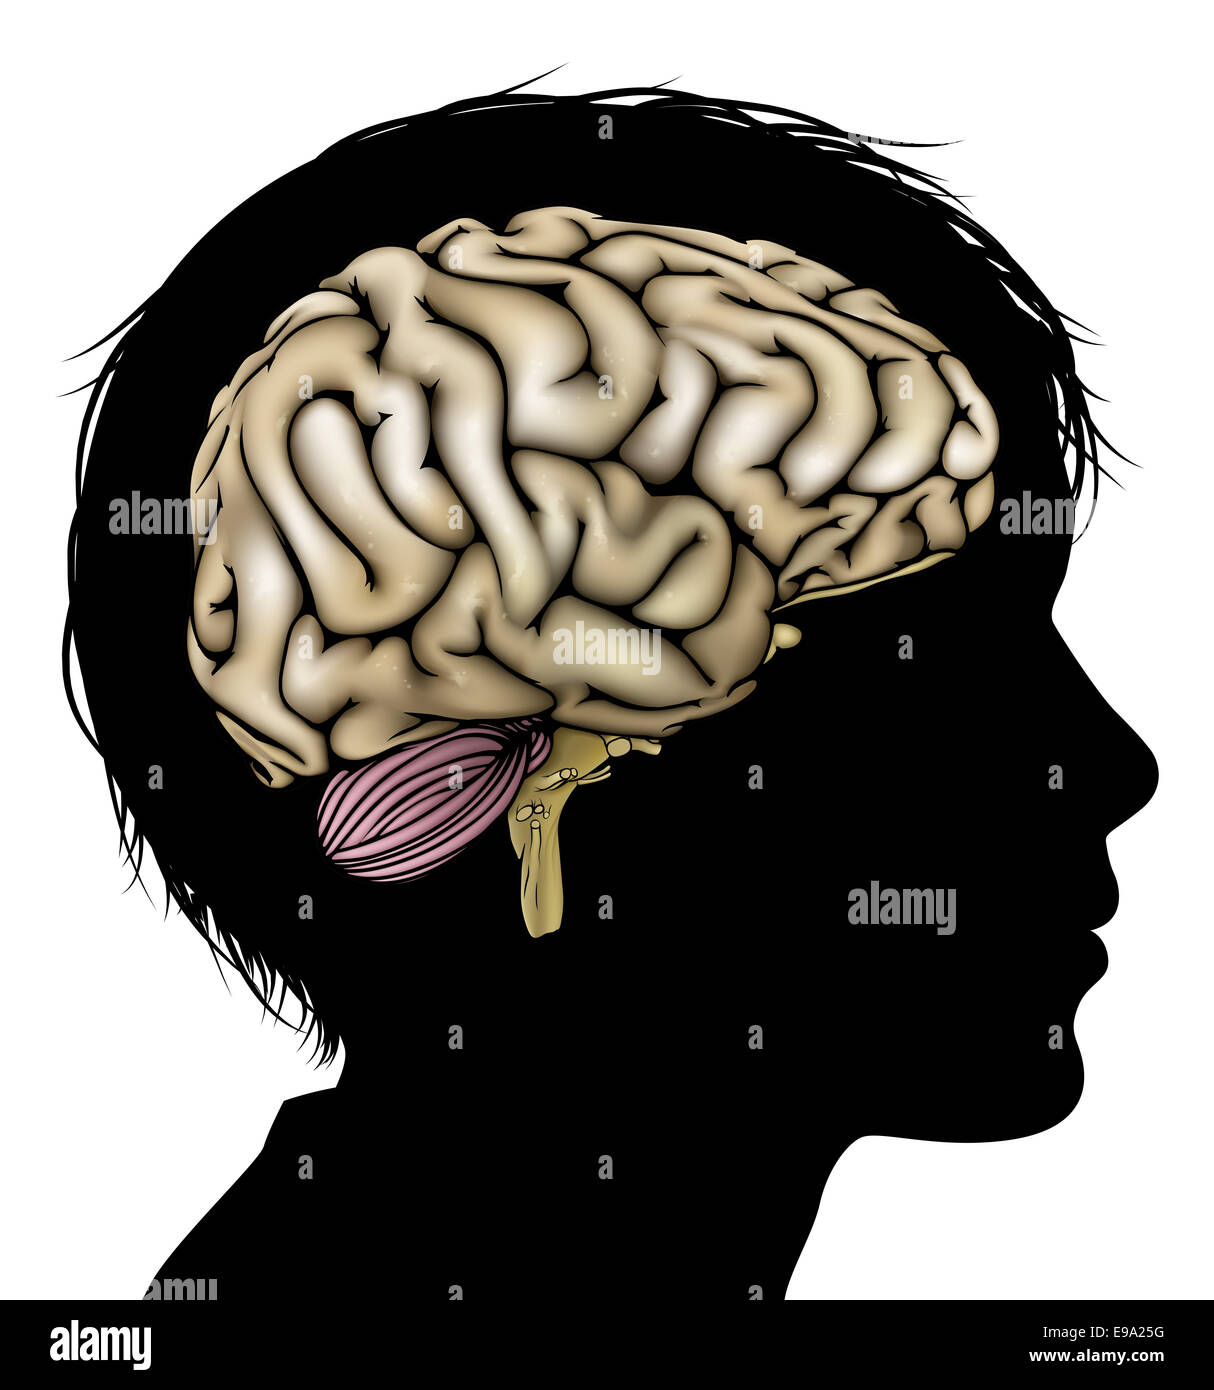 Una testa di bambino in silhouette con il cervello. Concetto di bambino mentale, lo sviluppo psicologico, sviluppo del cervello, di apprendimento e di edu Foto Stock